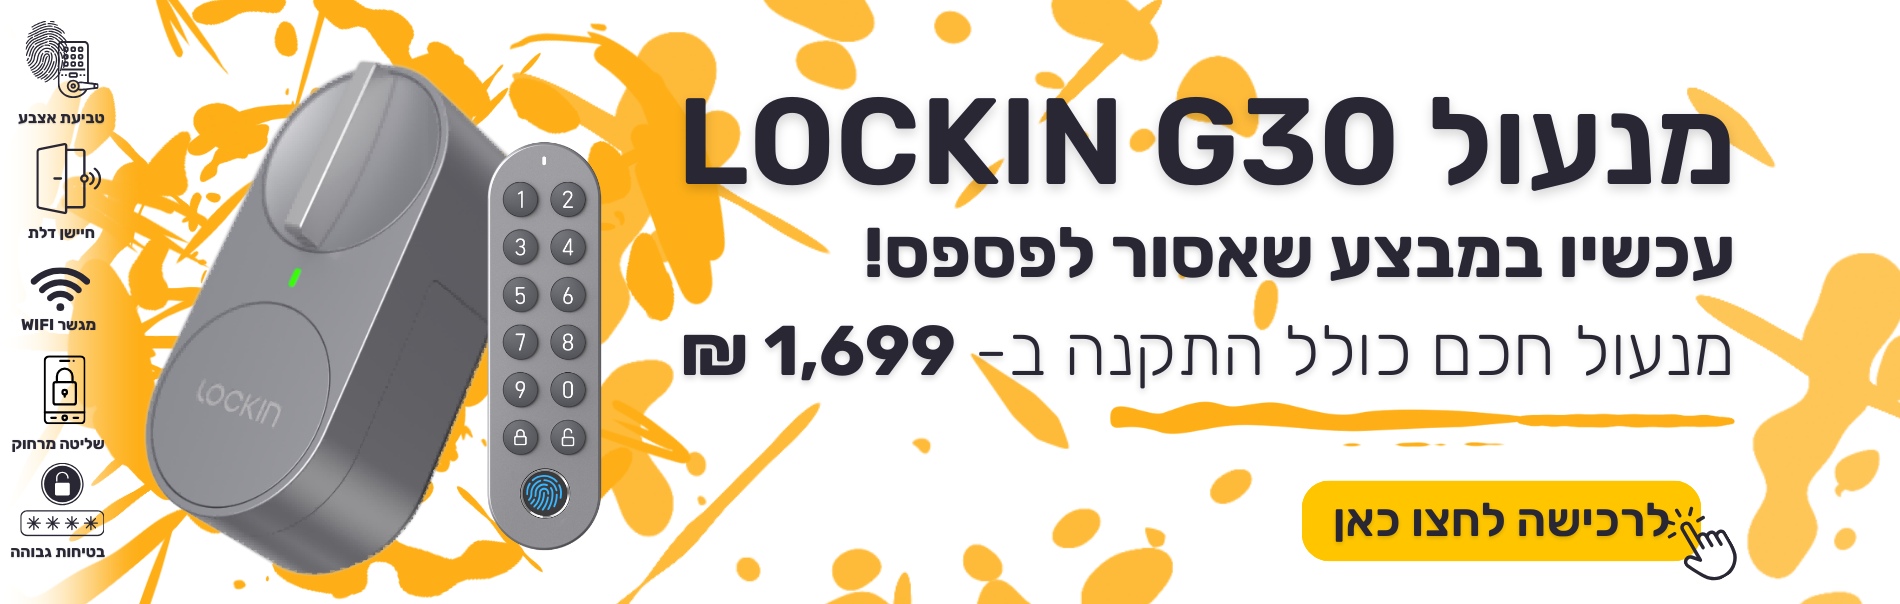 lockinG30